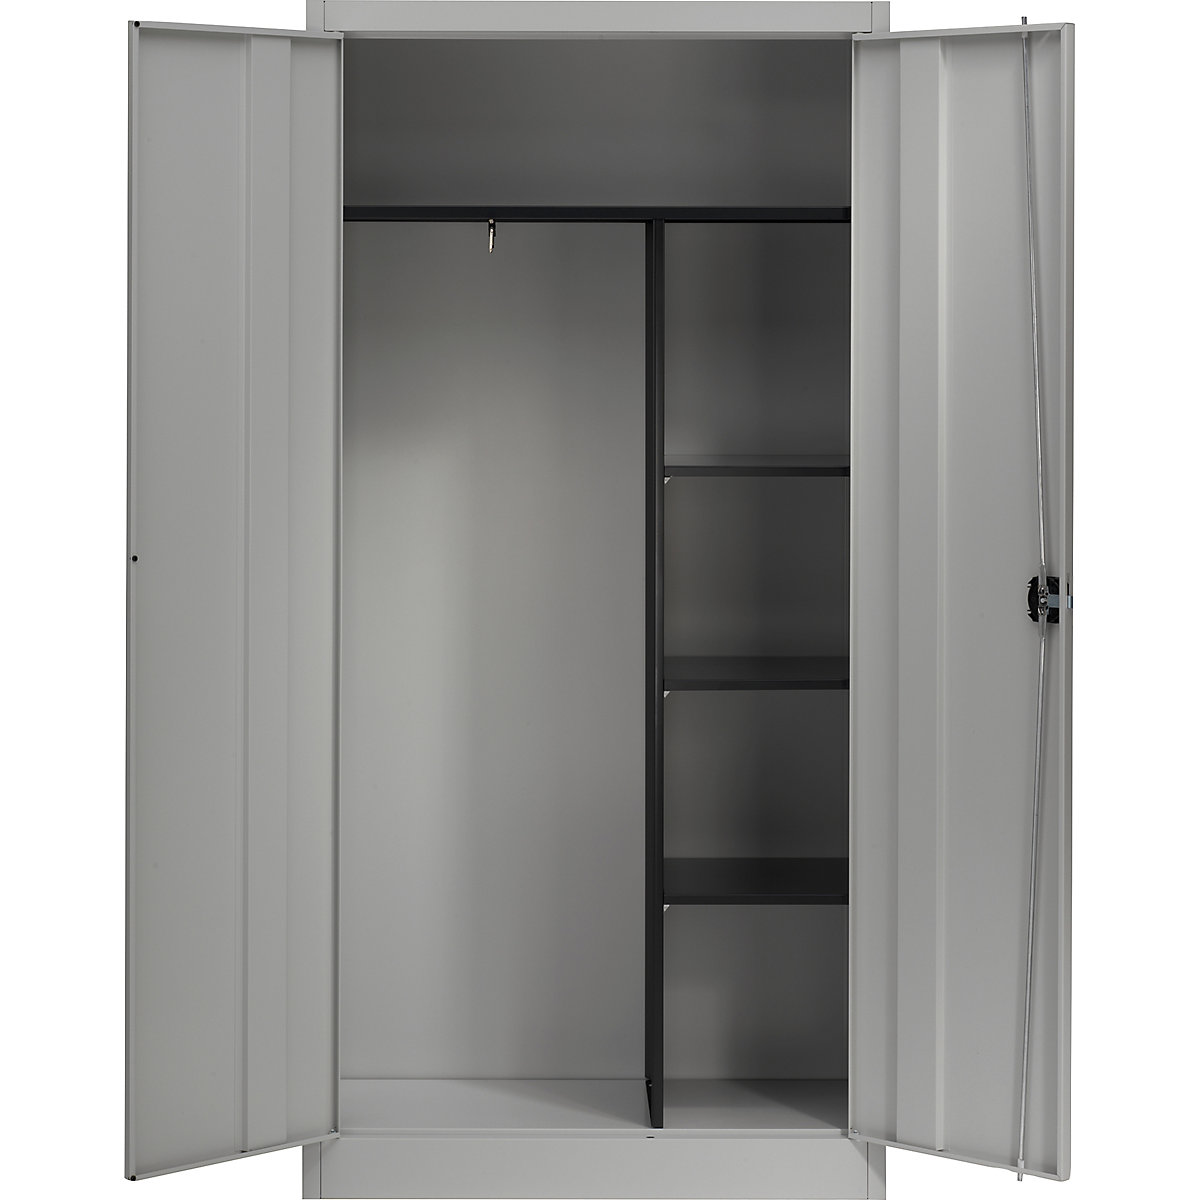 Ocelová skříň s otočnými dveřmi – mauser, 3 krátké police a věšák, bílá hliníková-6